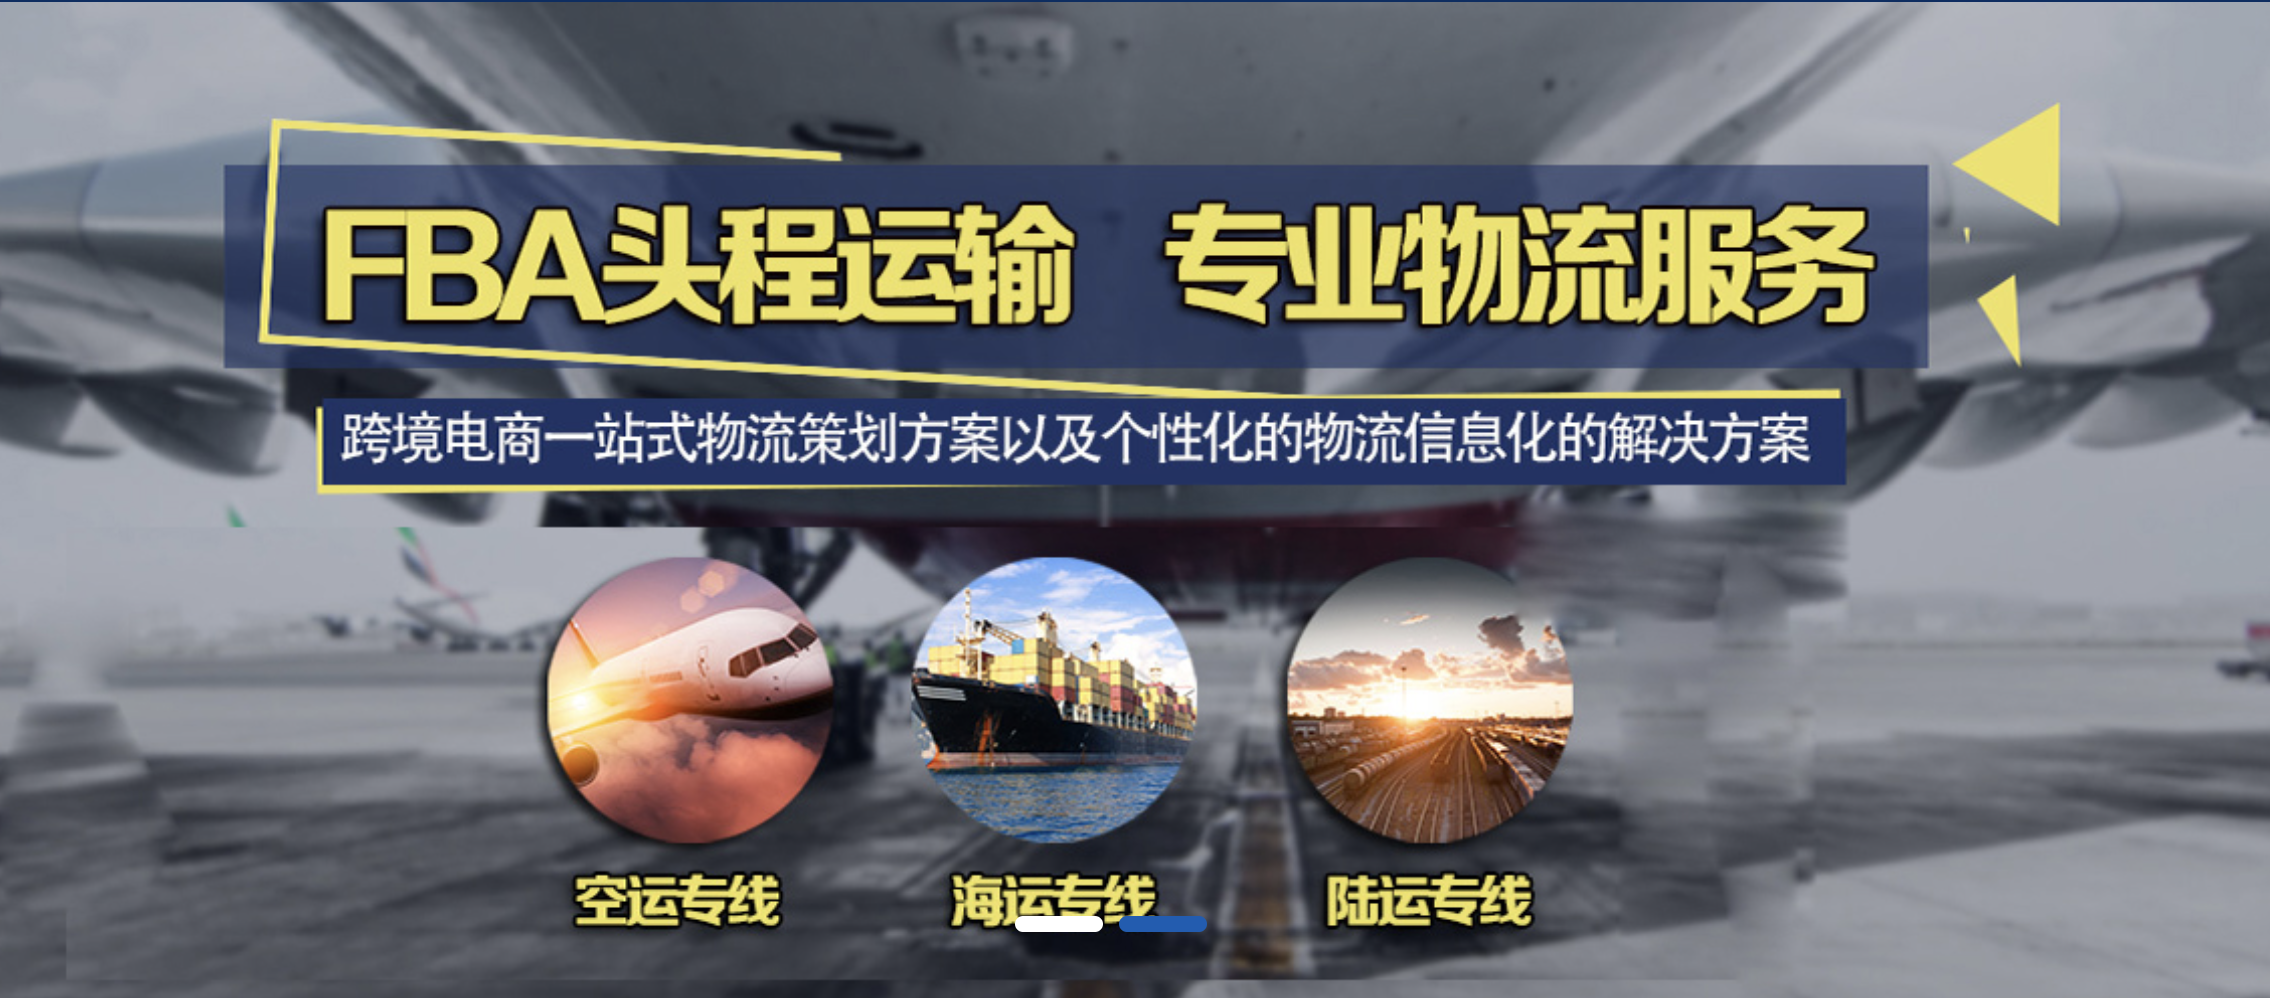 天津DHL国际快递业务